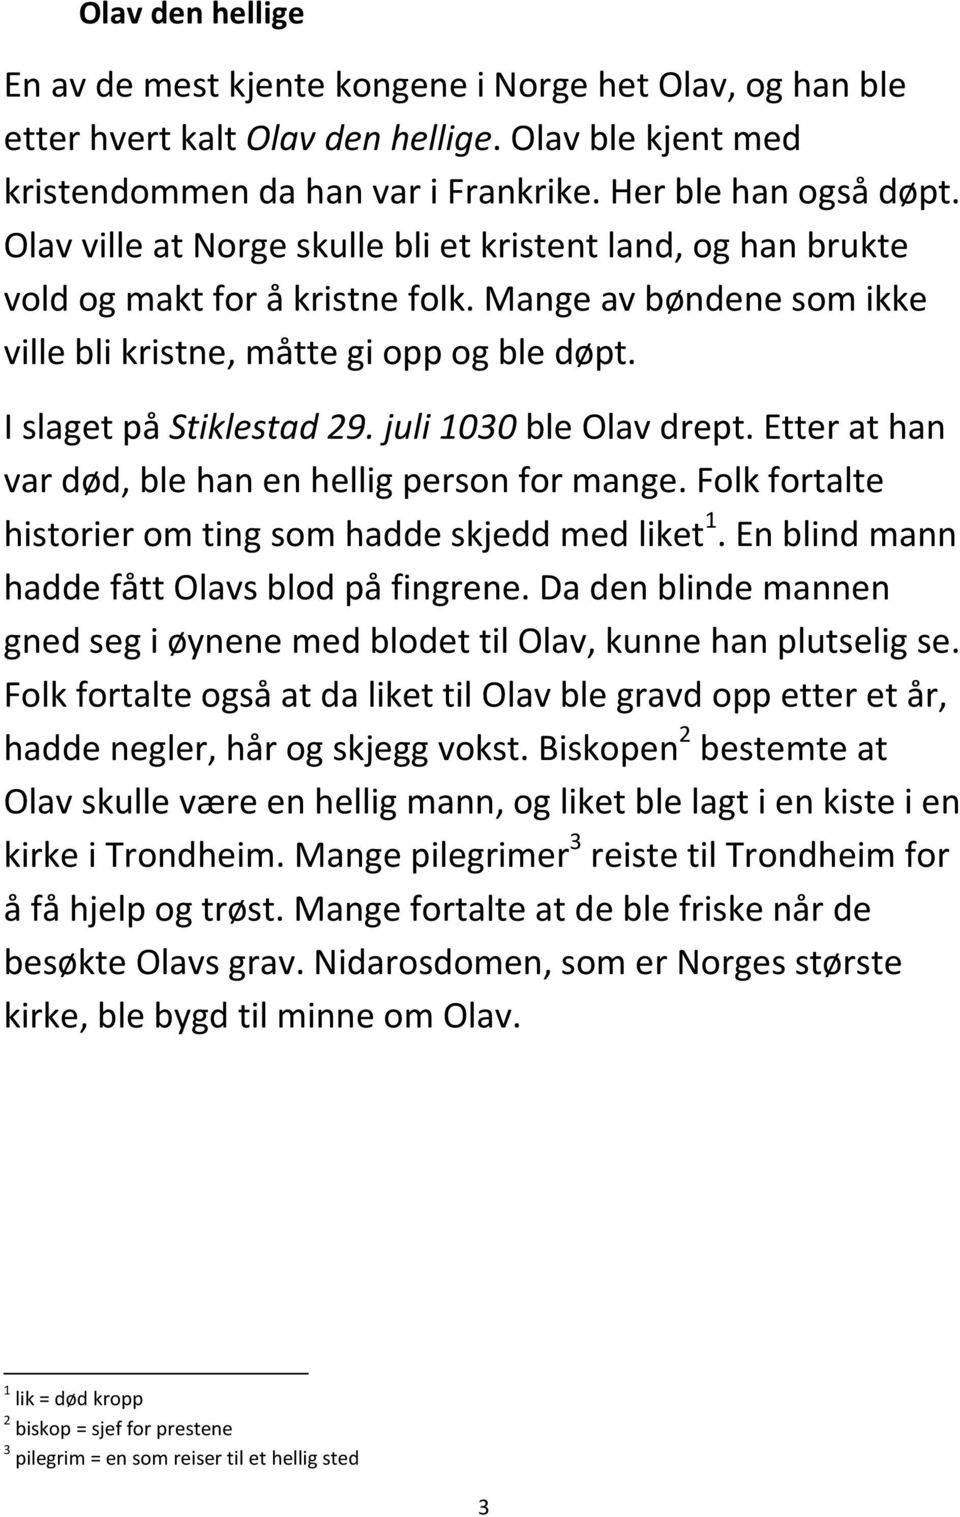 juli 1030 ble Olav drept. Etter at han var død, ble han en hellig person for mange. Folk fortalte historier om ting som hadde skjedd med liket 1. En blind mann hadde fått Olavs blod på fingrene.